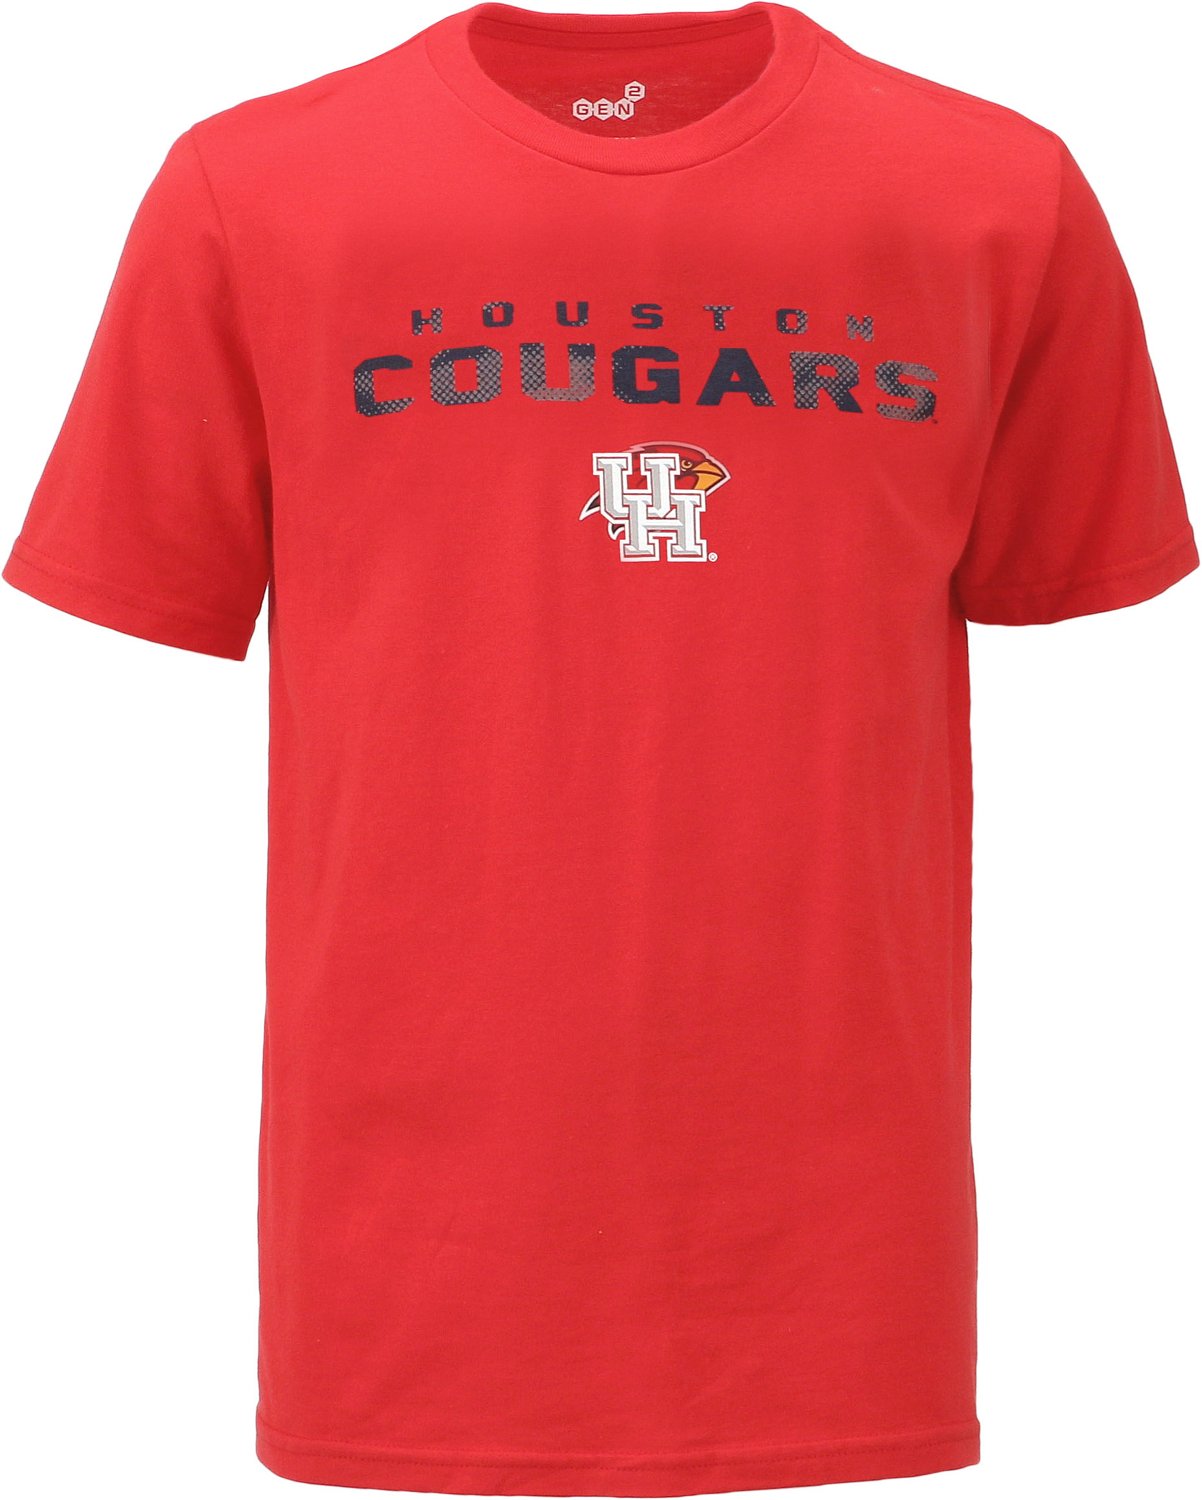 Houston Cougars Clothing | Academy